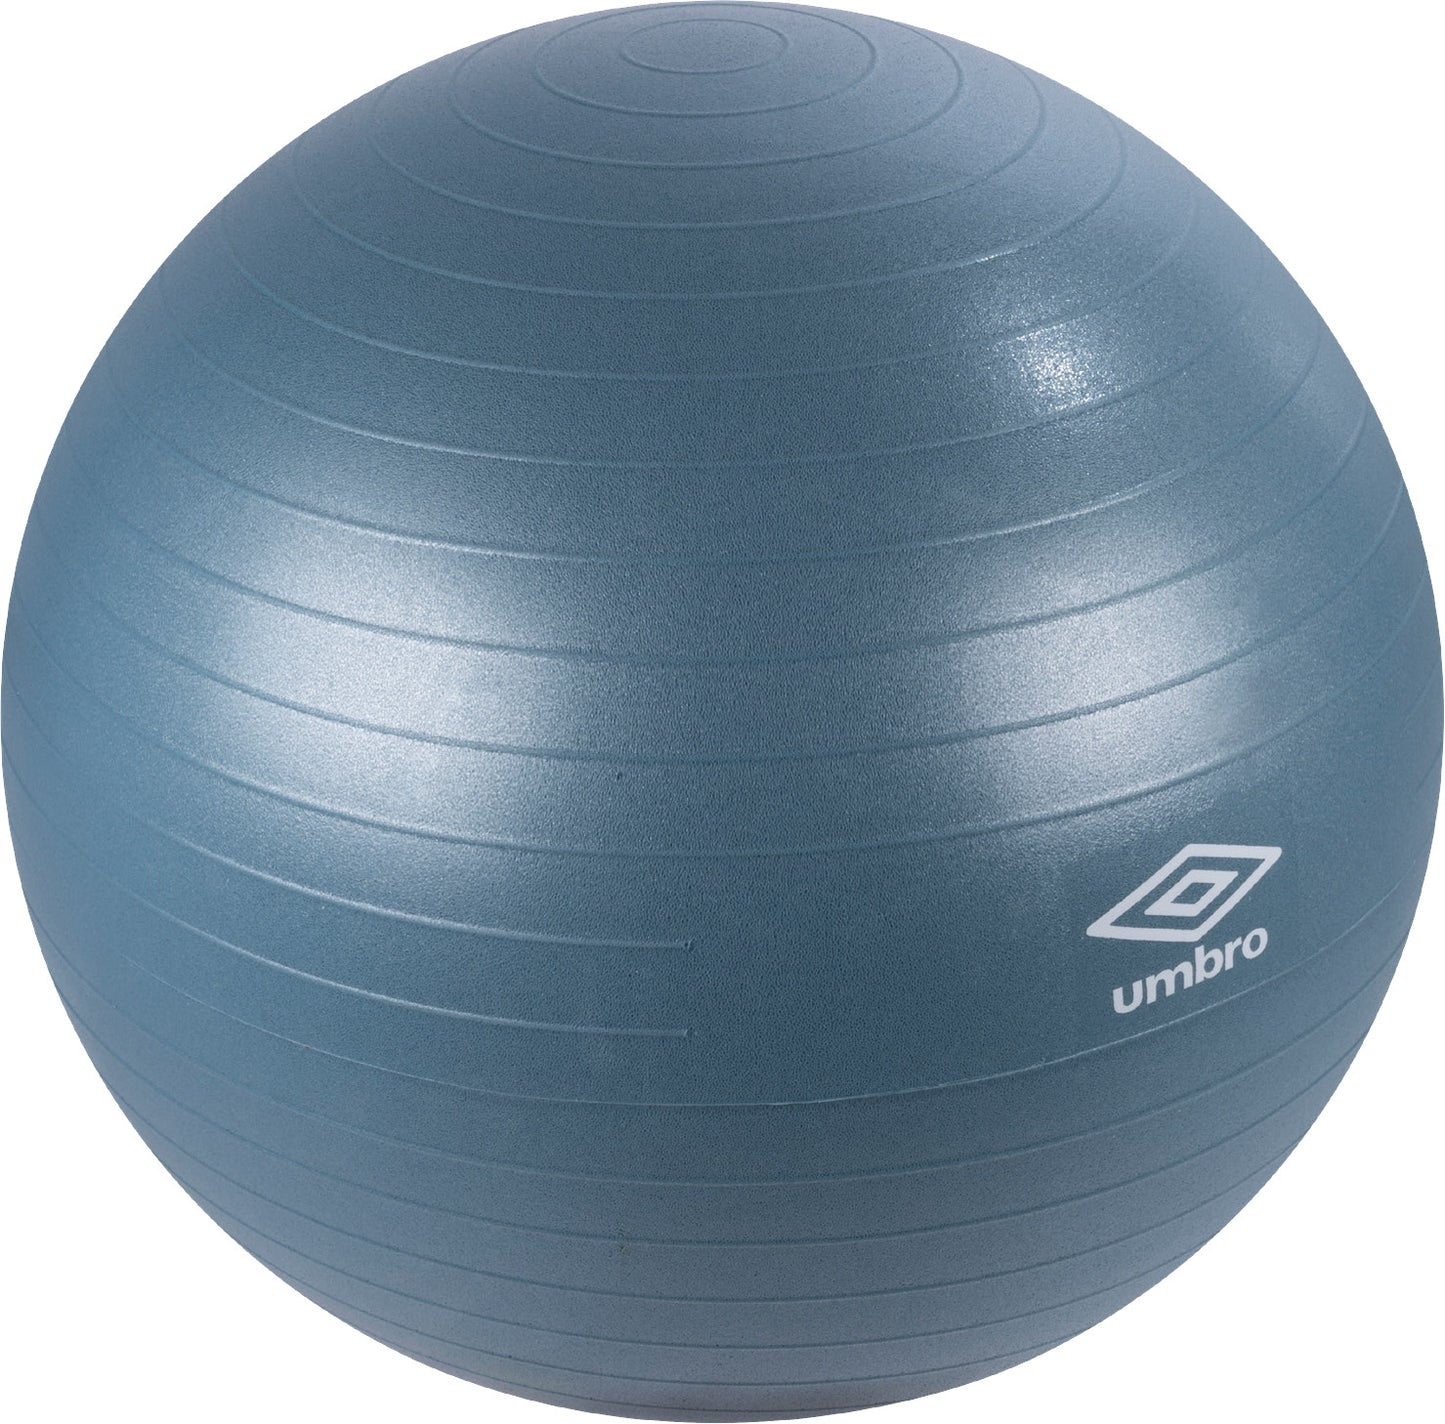 Umbro Blauwe Fitness Gymbal 65Cm